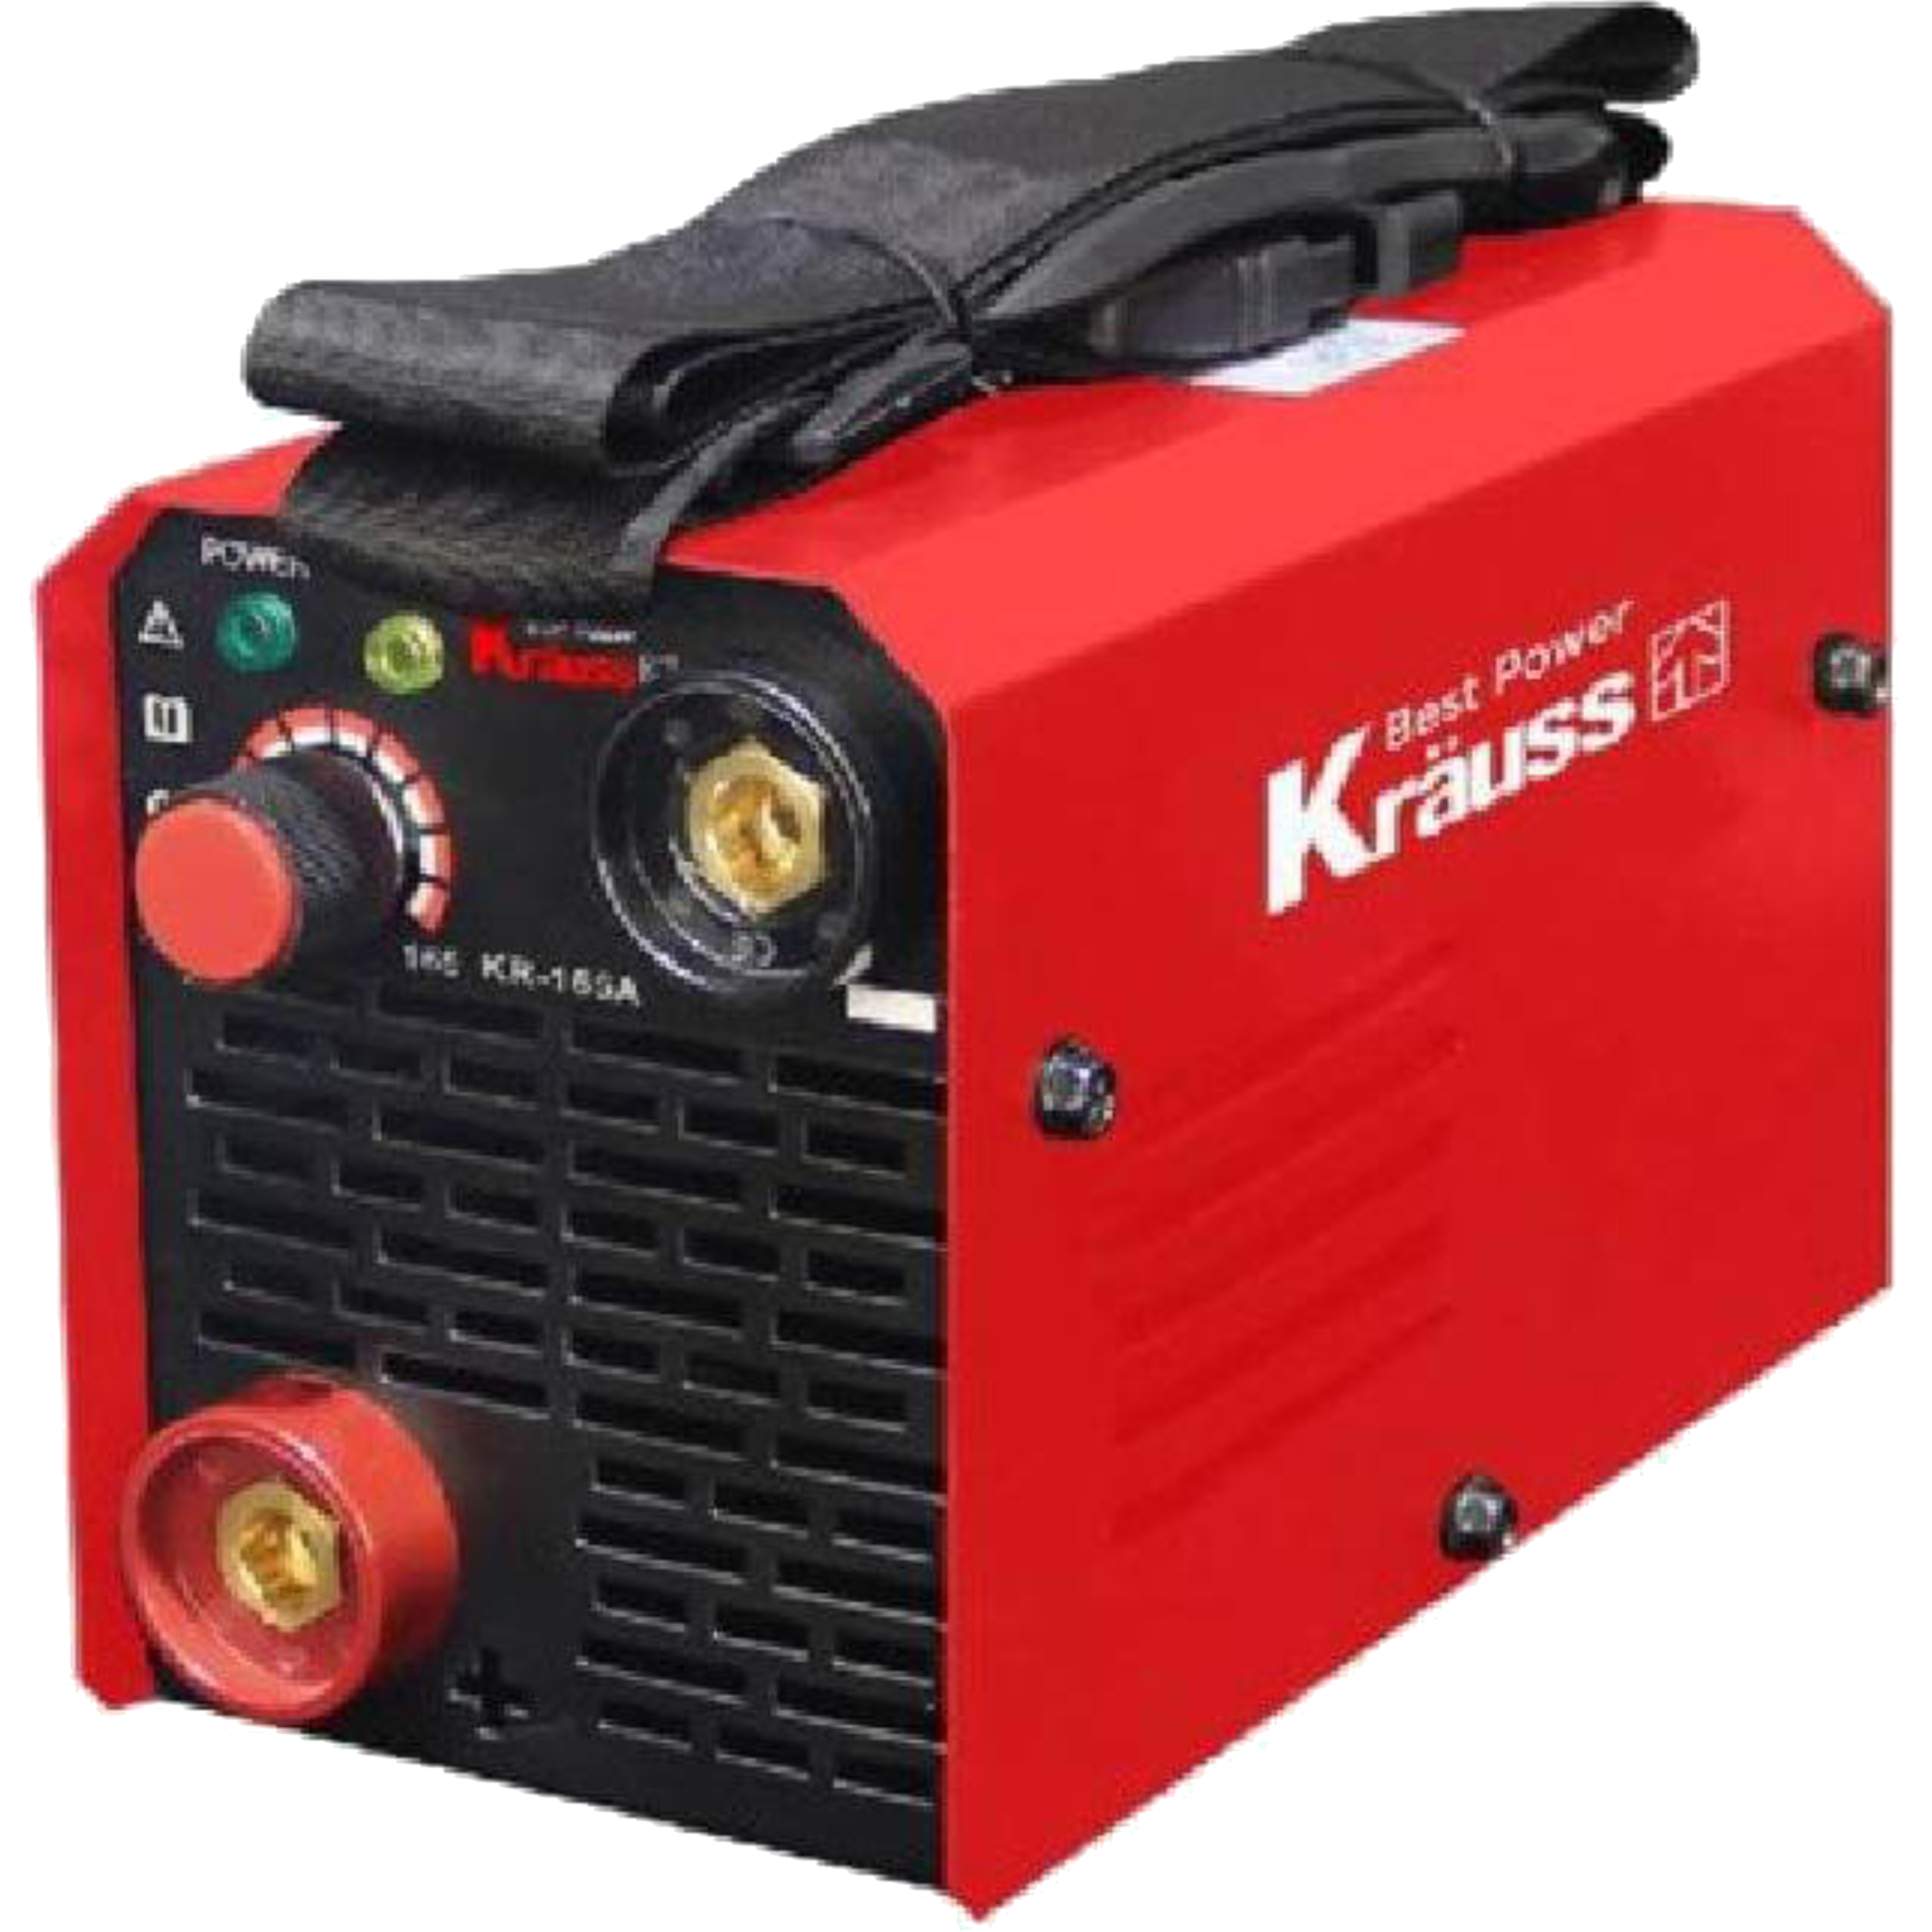 רתכת אלקטרונית 165A מקצועית Krauss KR-165A - אחריות ע